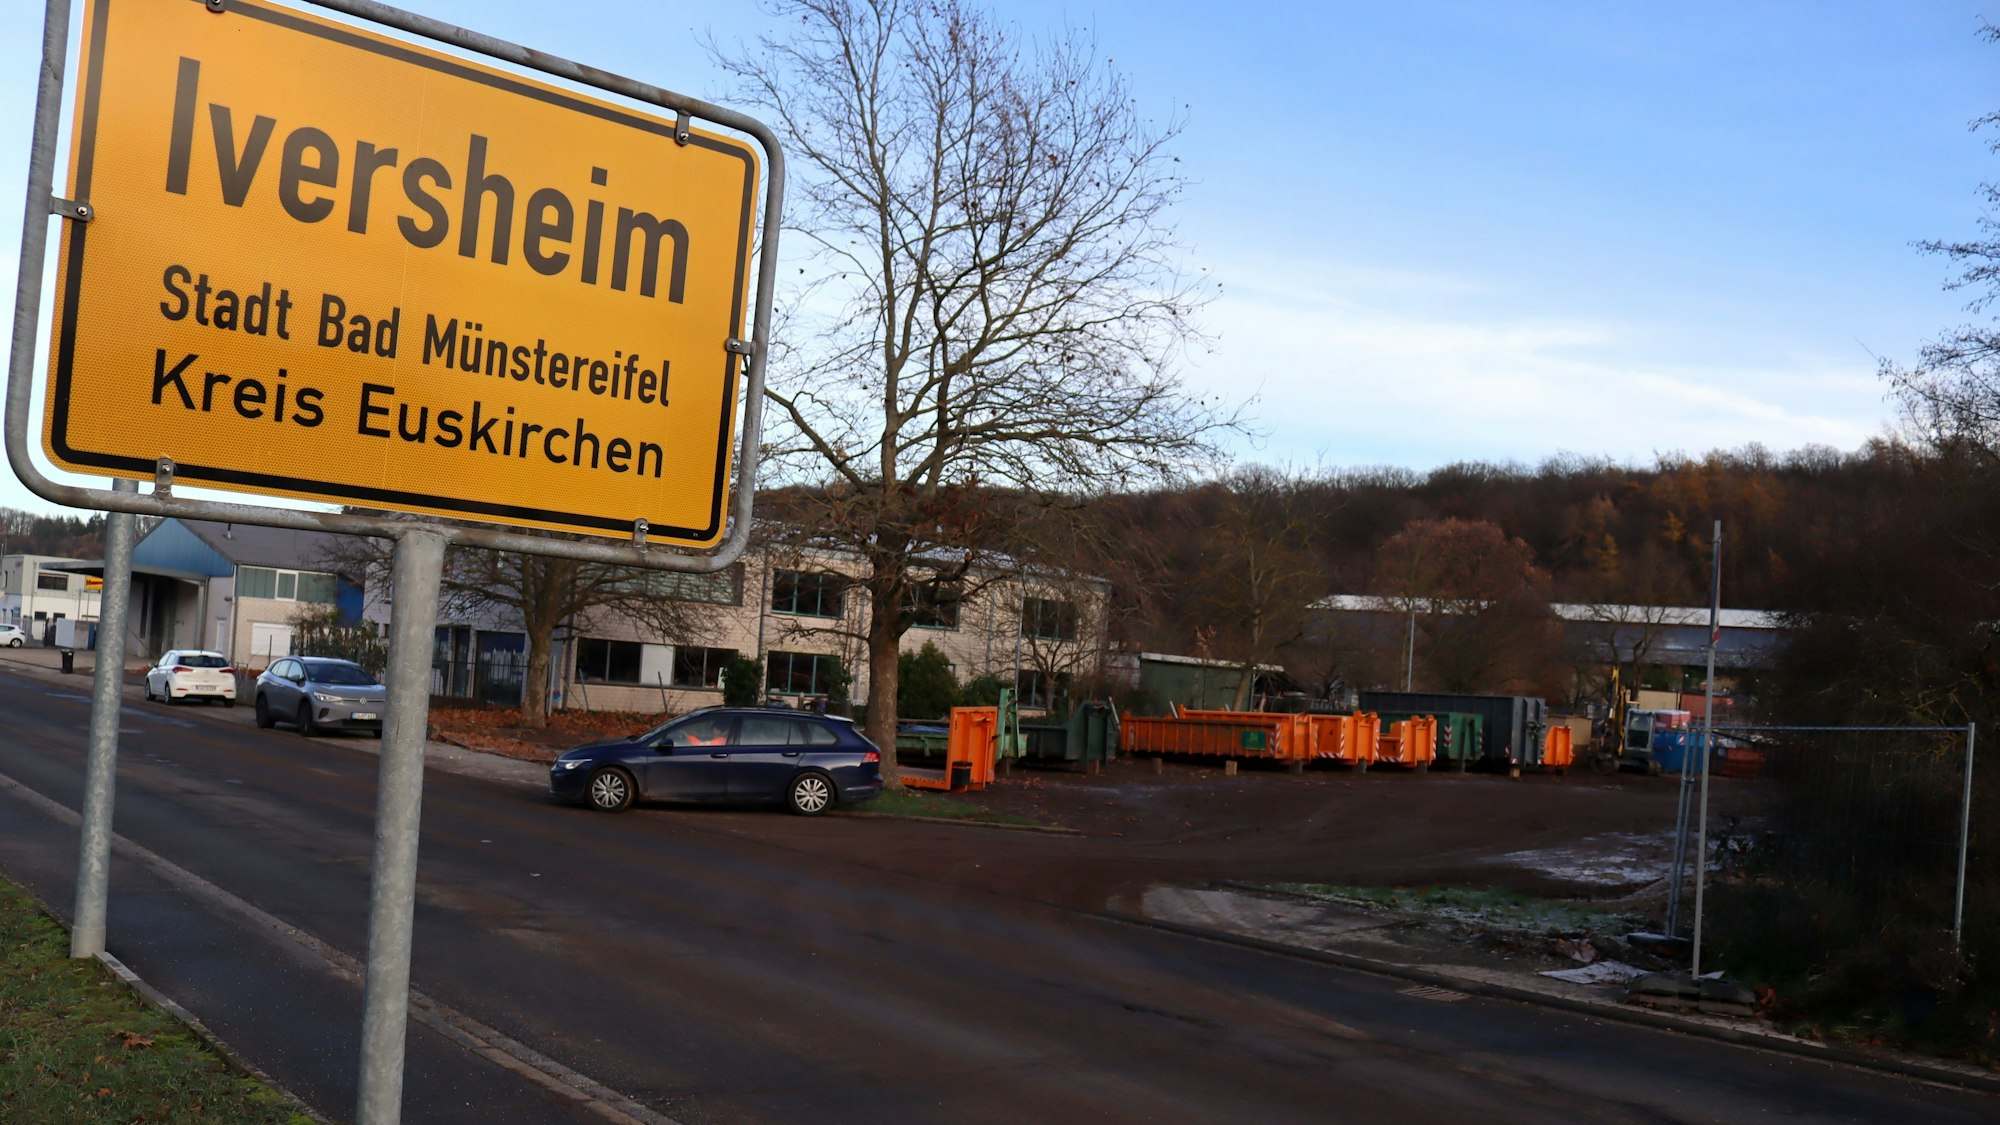 Das Ortsschild von Iversheim ist präsent, im Hintergrund ist eine mit Bauschutt-Containern besetzte Fläche zu sehen.